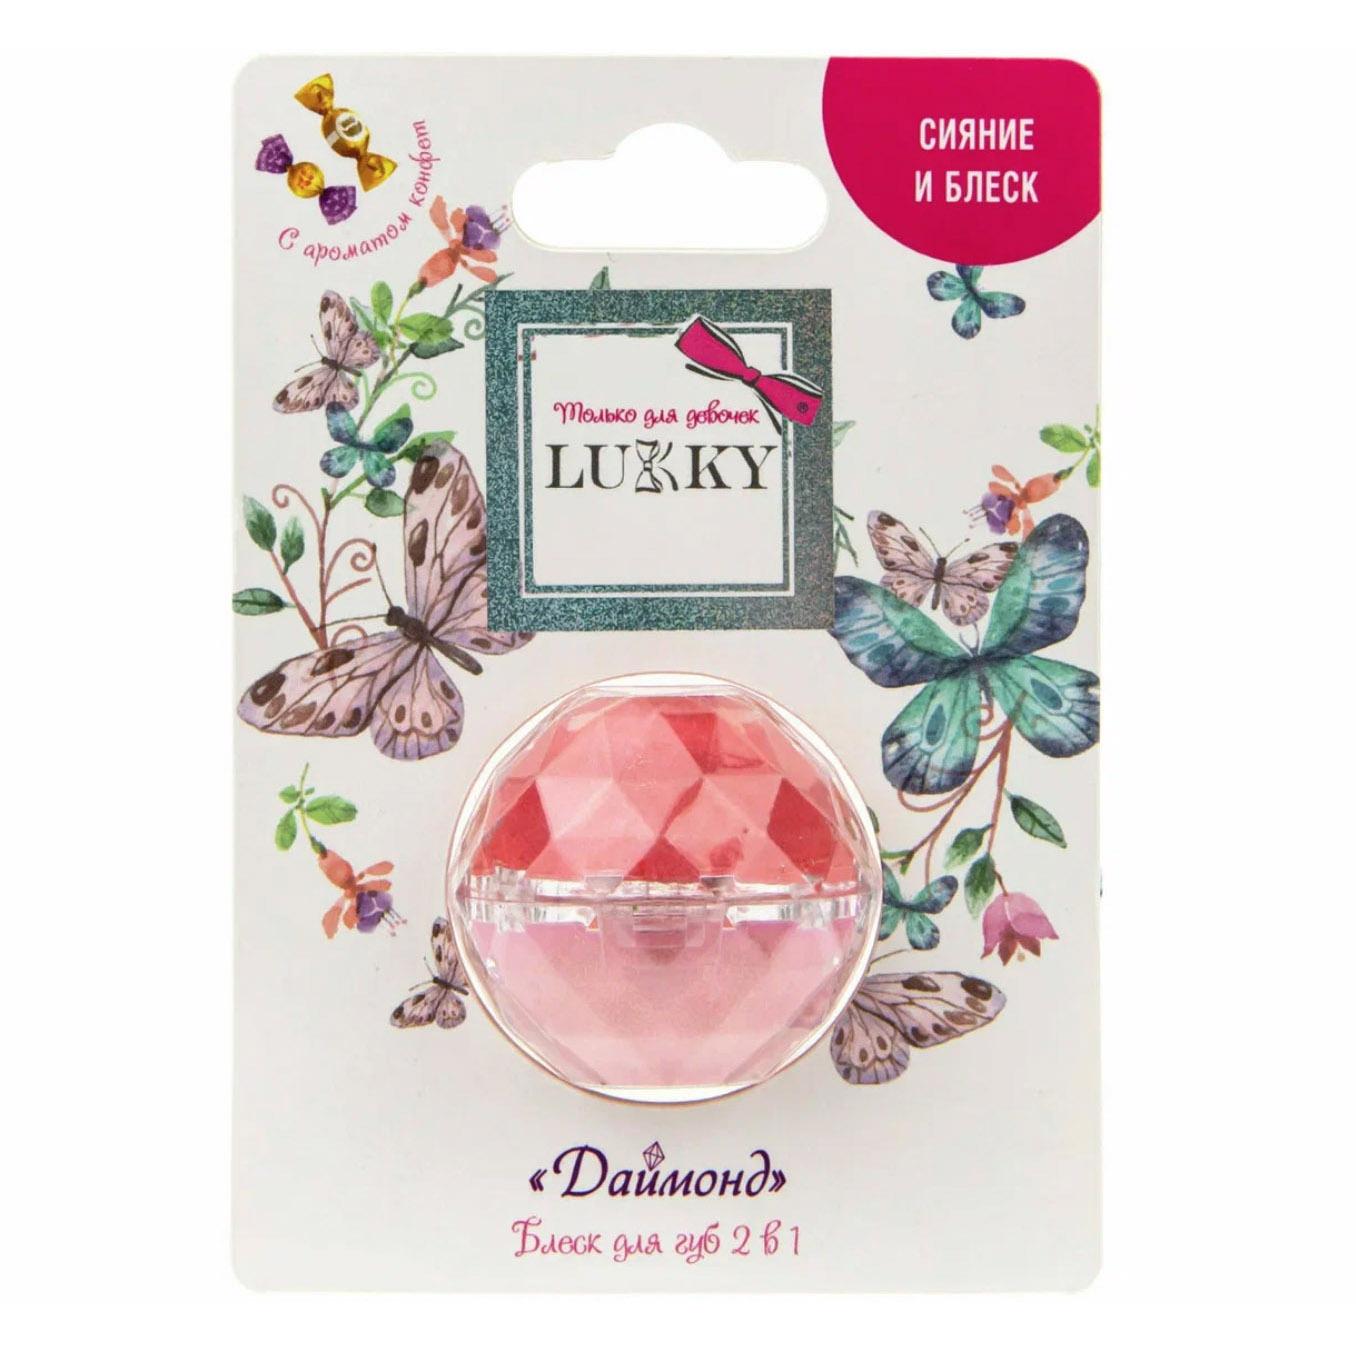 Блеск для губ Lukky Даймонд 2в1 аромат конфет розовый/бледно-розовый, 10 гр, Т20264 3d конструктор nano shot из миниблоков коробка конфет сердце розовый 1999 дет